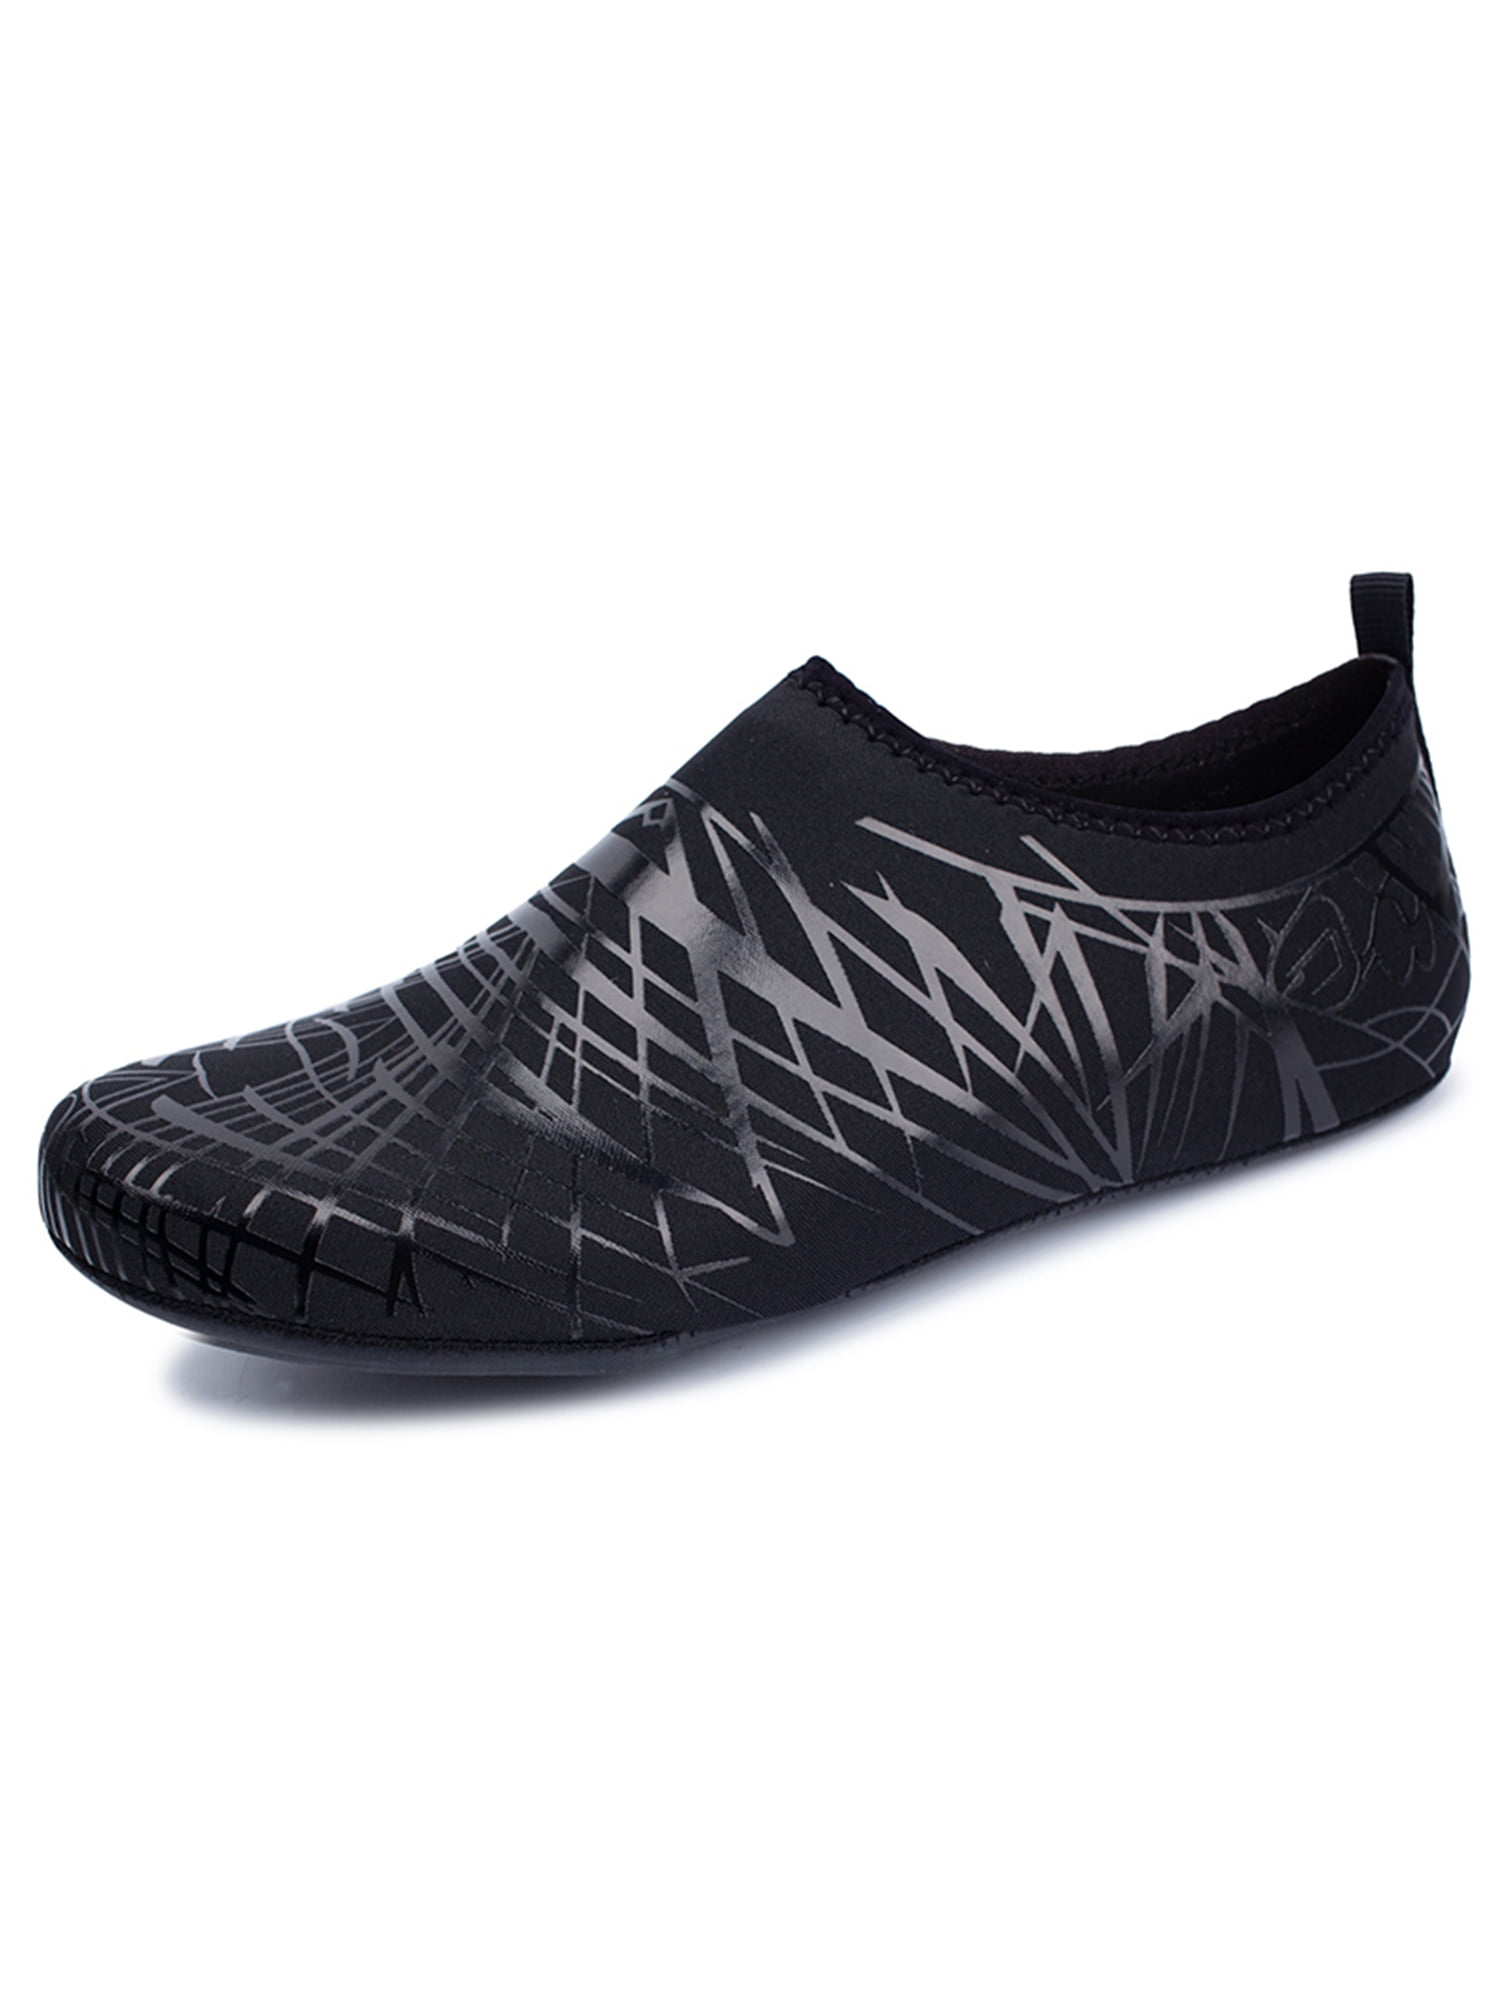 SYKT Water Shoes Barefoot Quick-Dry Aqua Yoga Socks Slip-on Men Women Kids